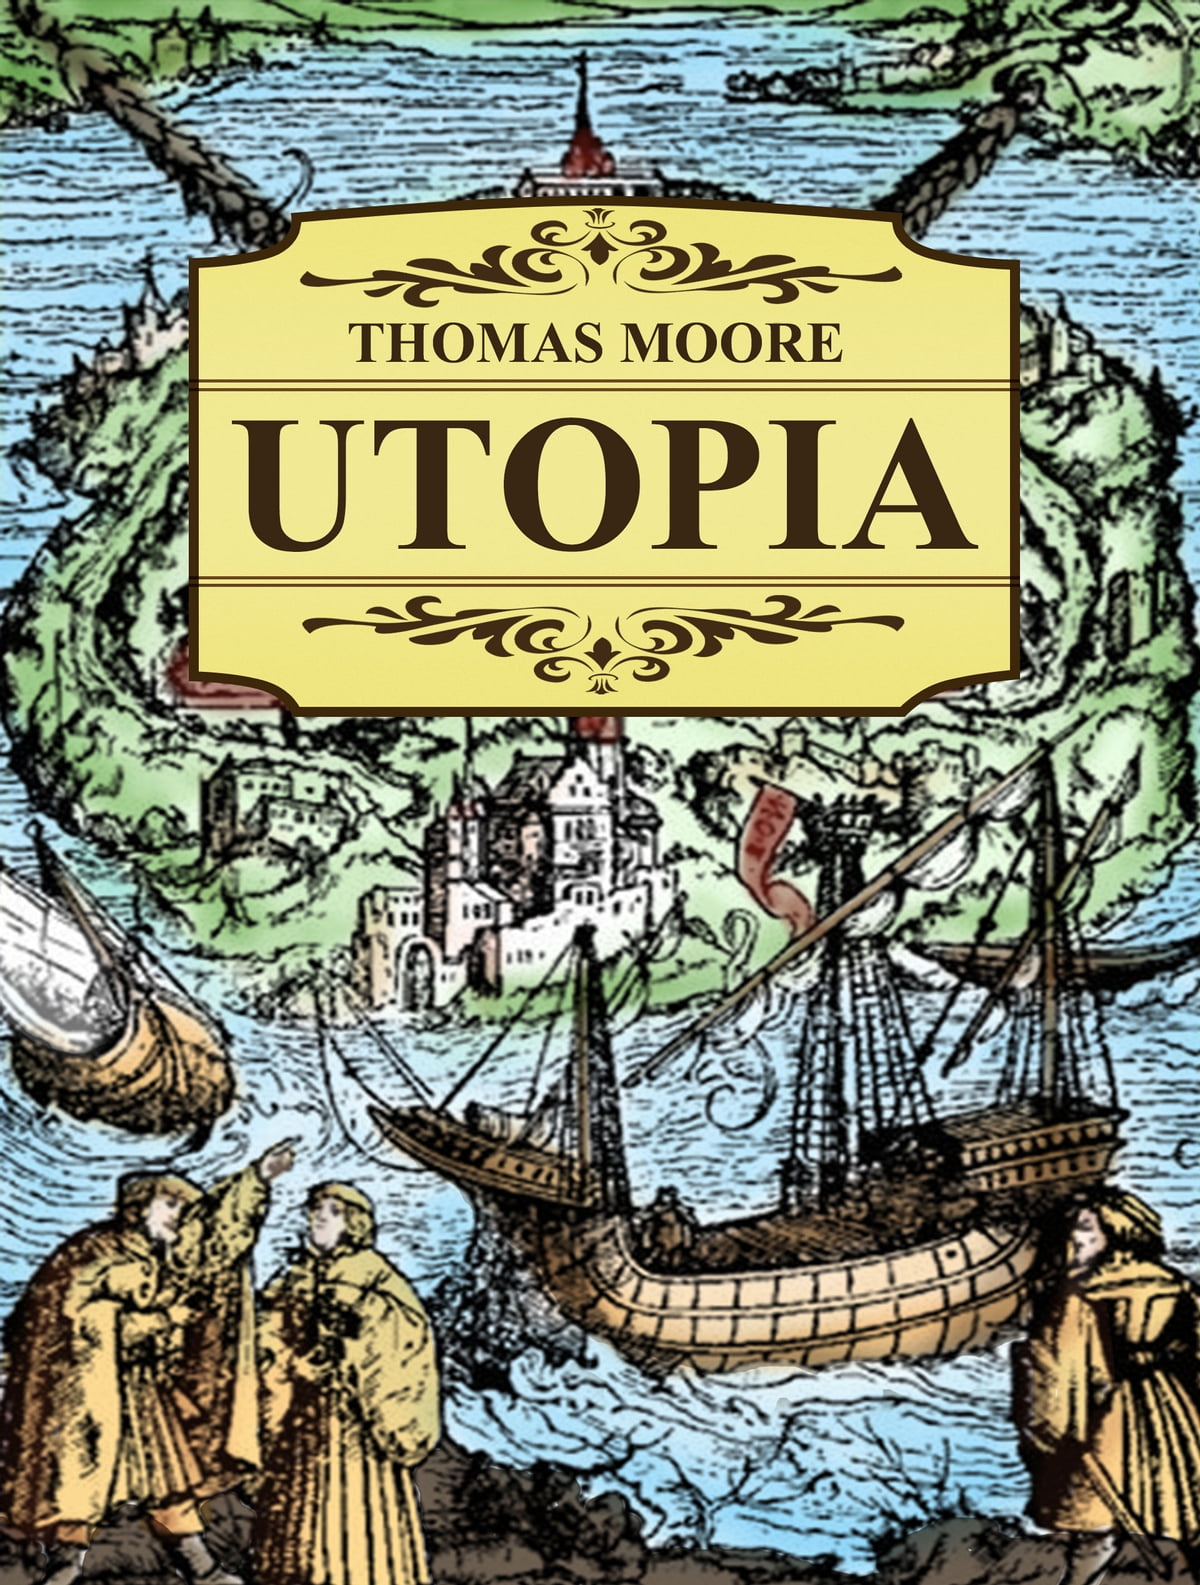 Thomas More'un 1516'da yayımlanan ve toplumsal idealizmi tartıştığı eseri olan "Utopia," Rönesans dönemi edebi eserler arasında önemli bir yere sahiptir. Bu eser, hem dönemin siyasi ve toplumsal yapısına eleştirel bir yaklaşım sunar hem de ideal bir toplumun nasıl olabileceğine dair ileri sürdüğü fikirlerle bilinir.